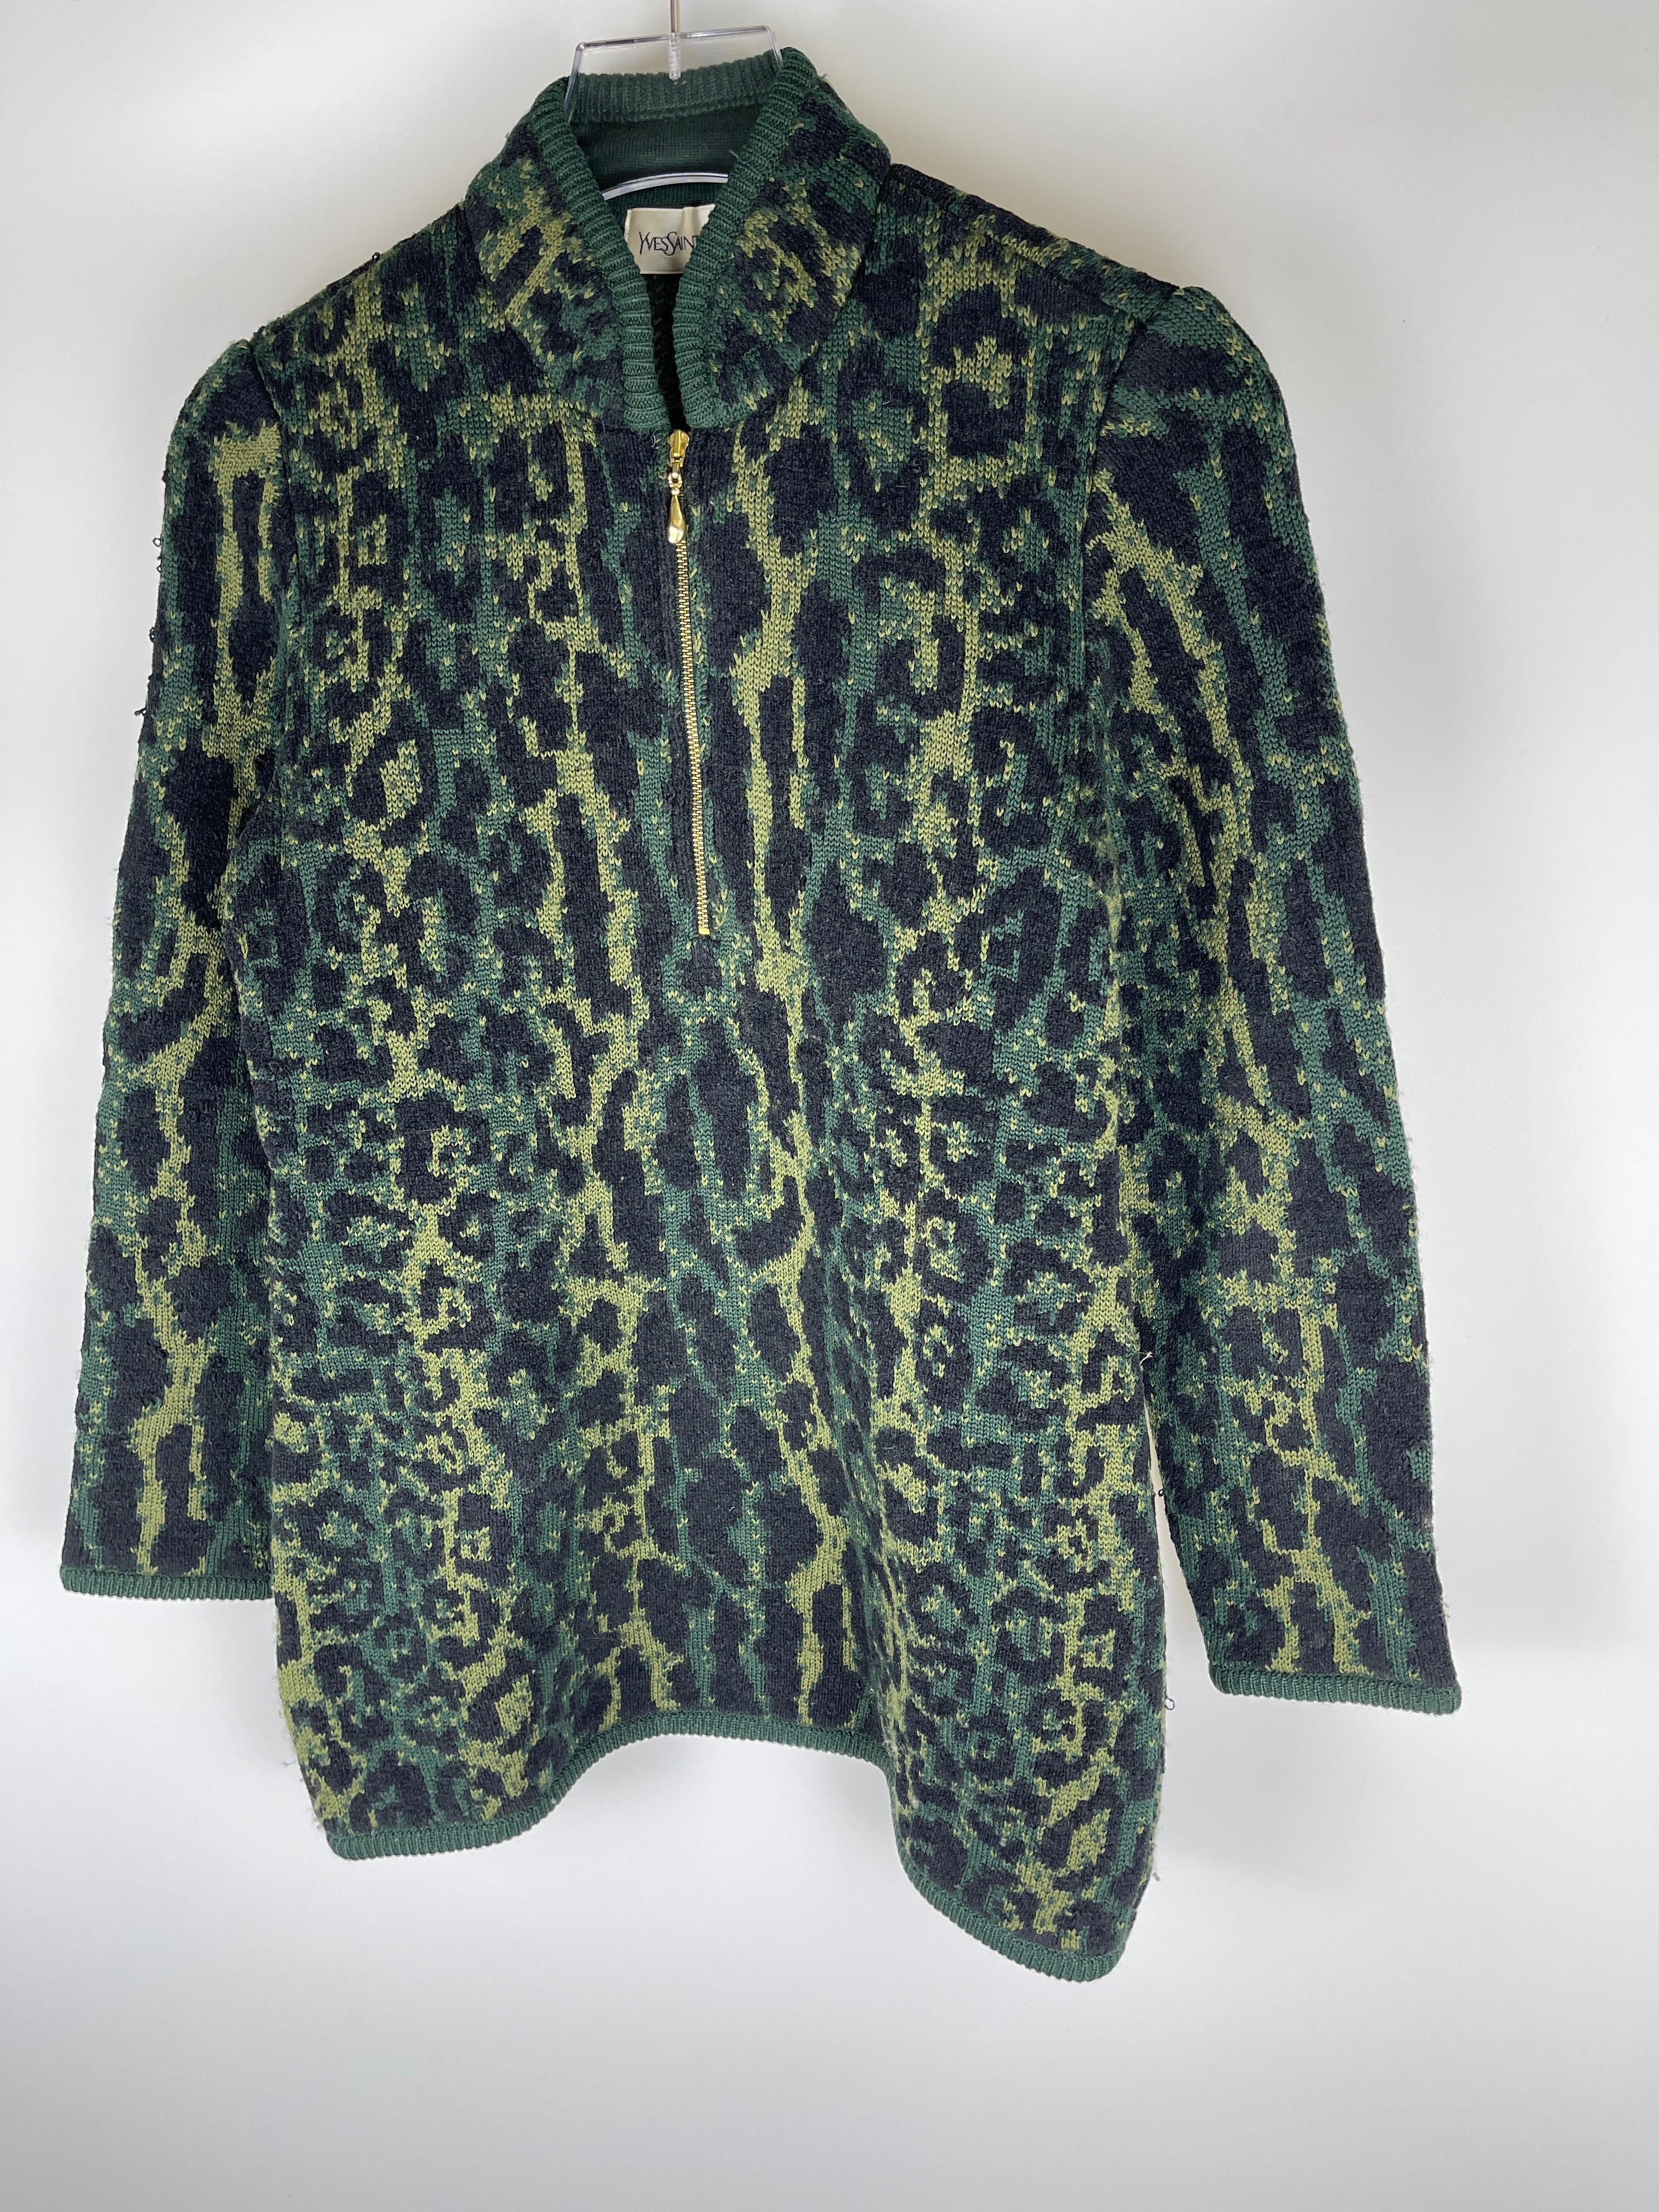 Yves Saint Laurent 1980's Snow Leopard Sweater  For Sale 4